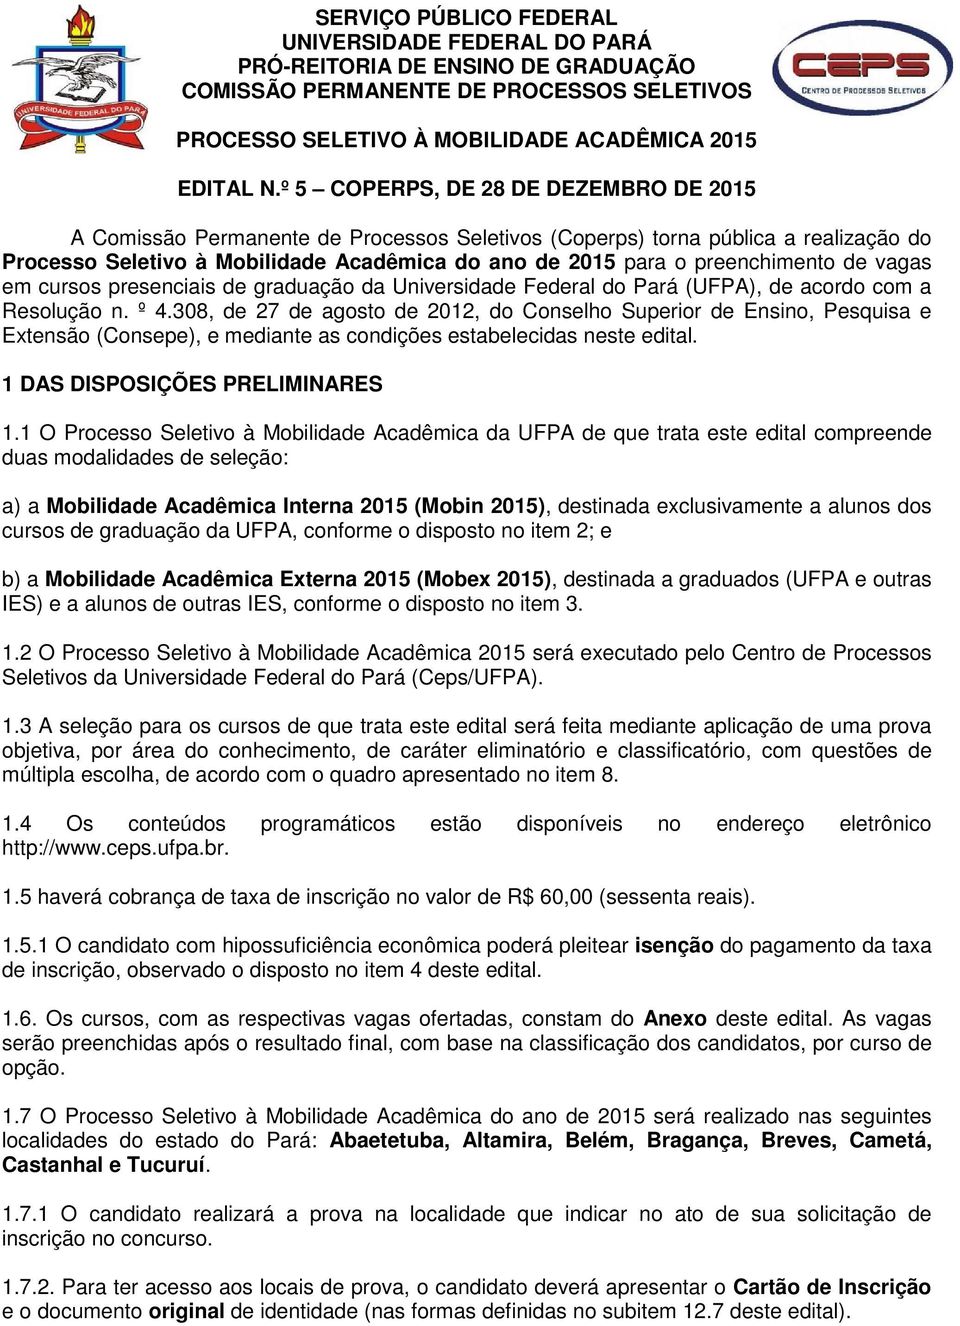 preenchimento de vagas em cursos presenciais de graduação da Universidade Federal do Pará (UFPA), de acordo com a Resolução n. º 4.